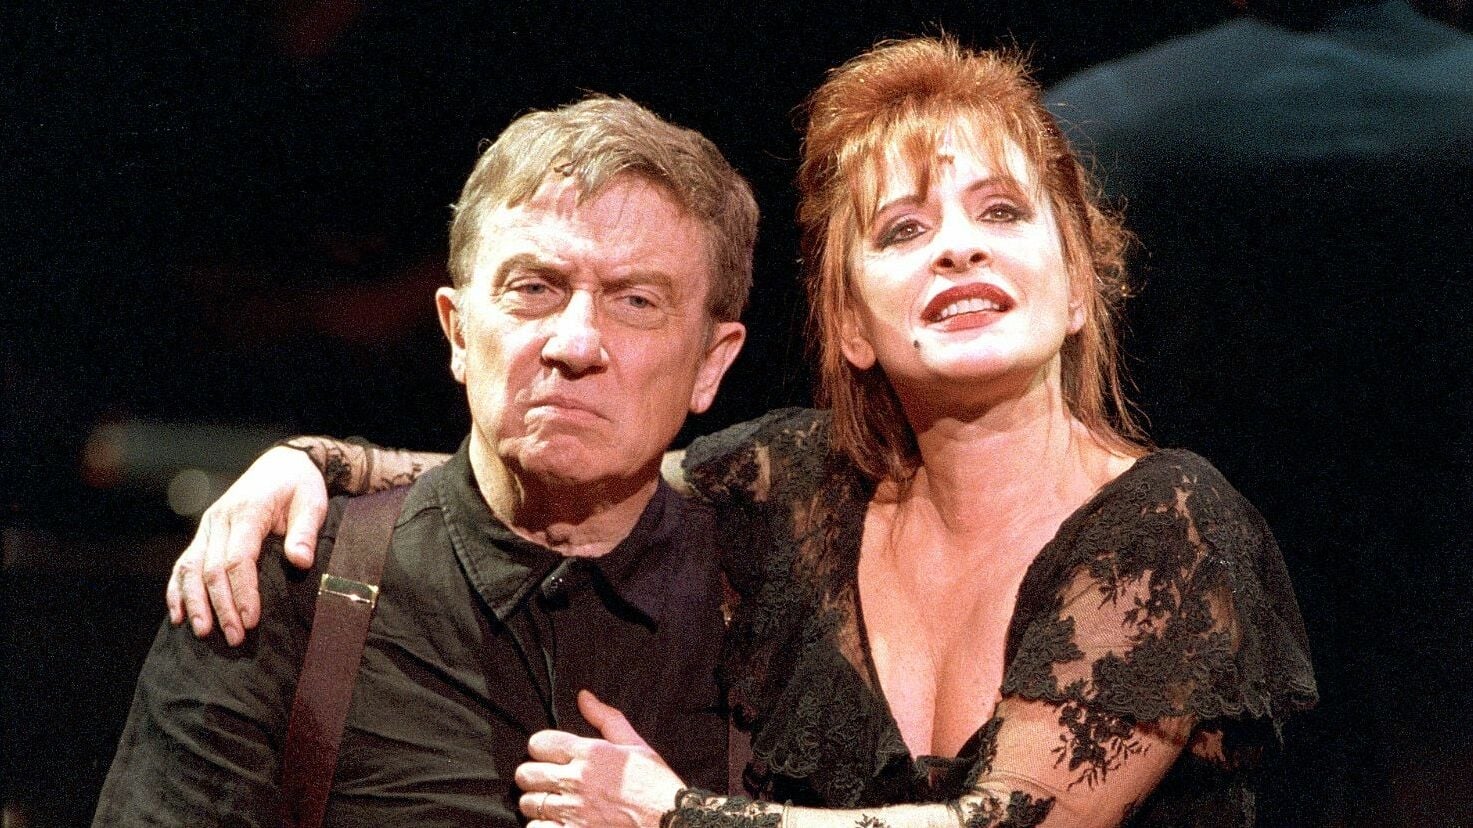 Sweeney Todd: The Demon Barber of Fleet Street in Concert (2001)